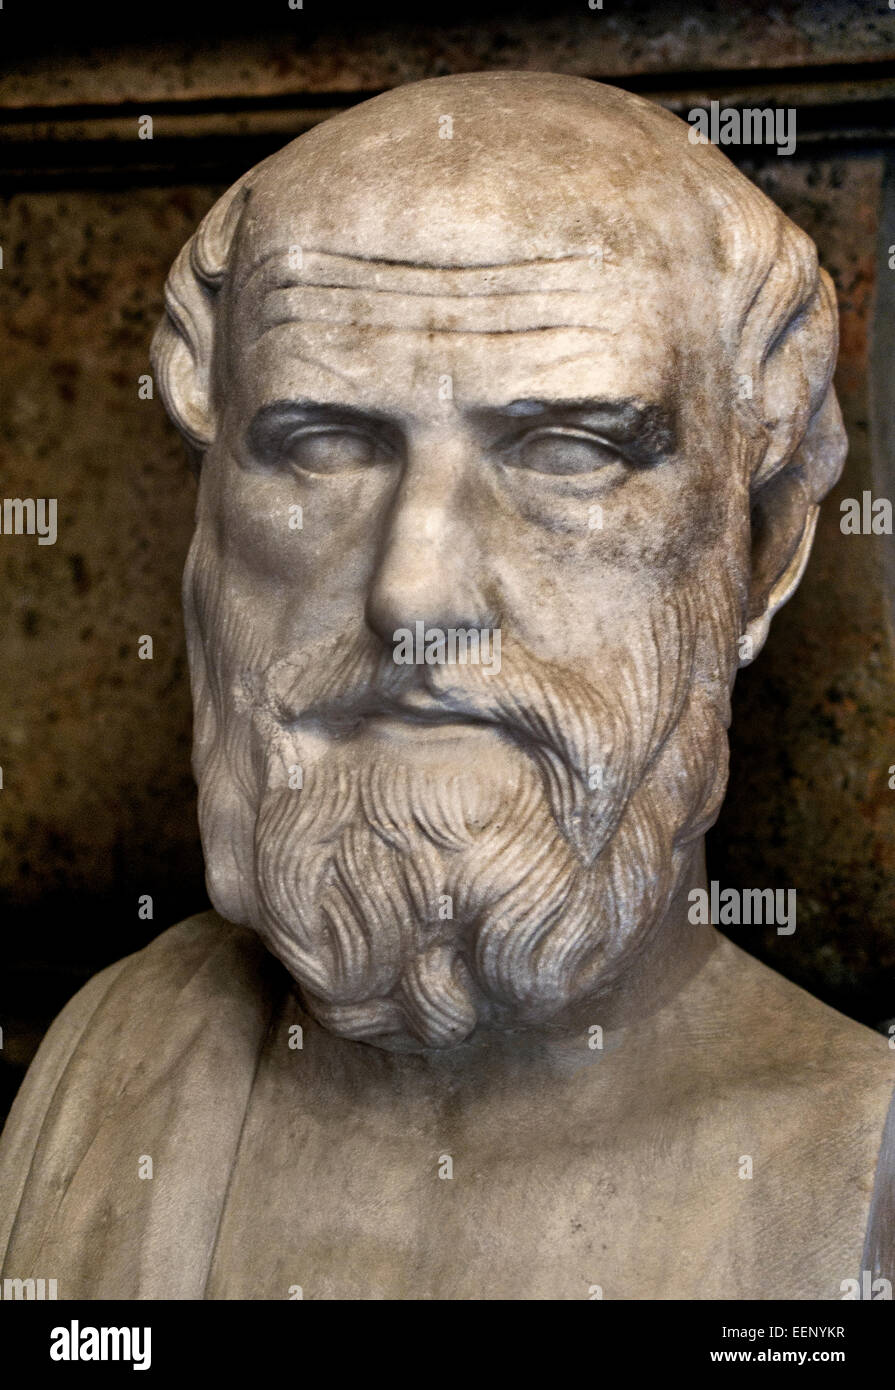 Herm de copie grecque après un original grec 2 siècle avant J.-C. Musée du Capitole de Rome Italie Italien Banque D'Images